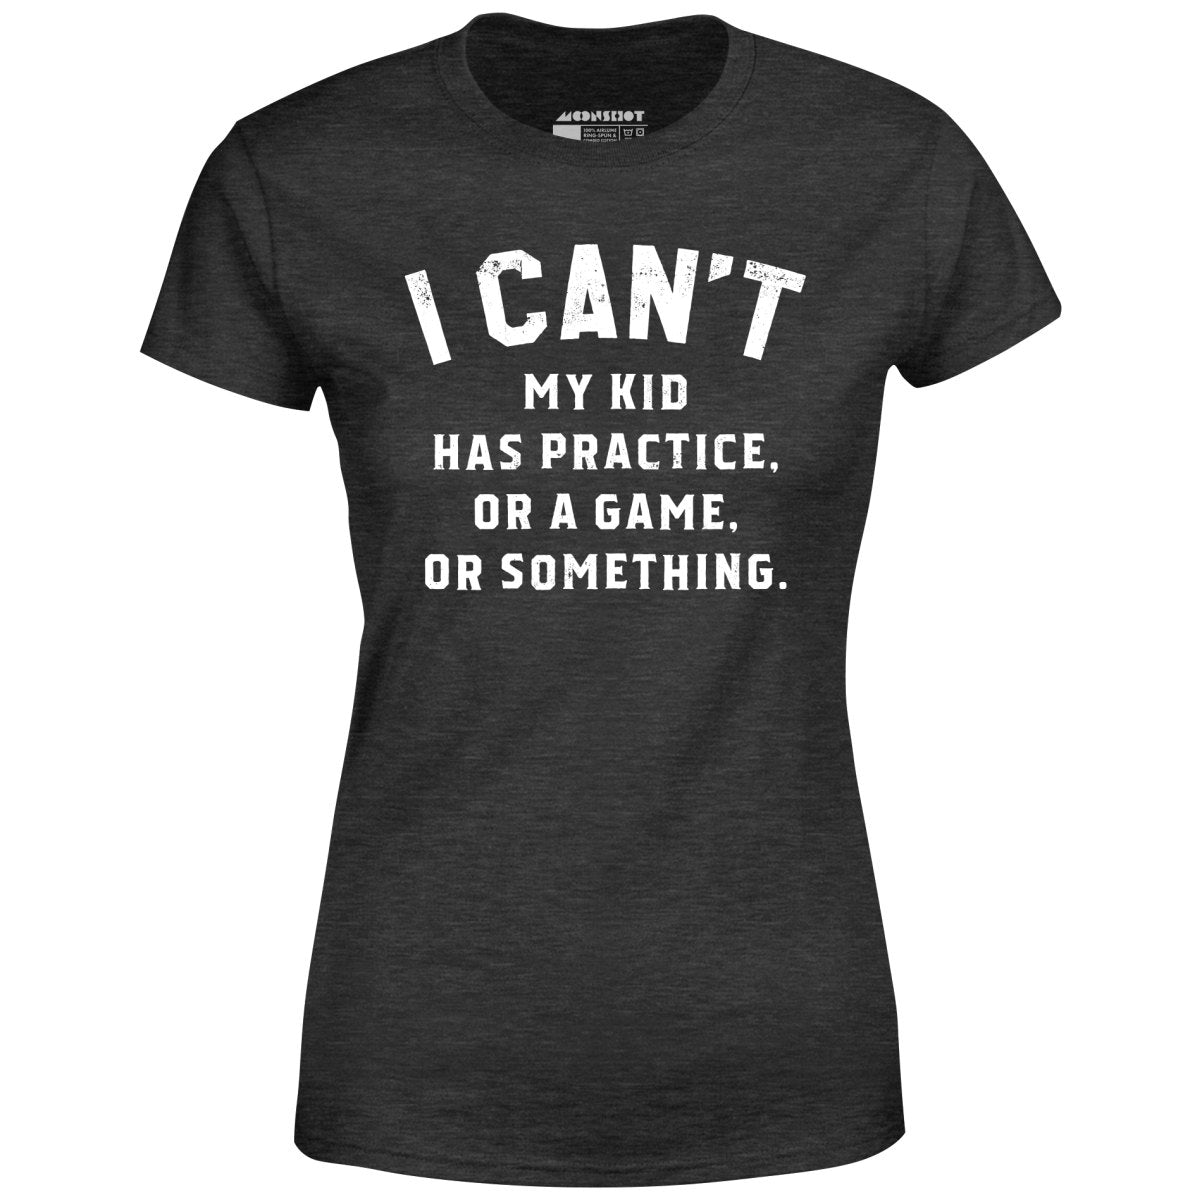 I Can't - Women's T-Shirt